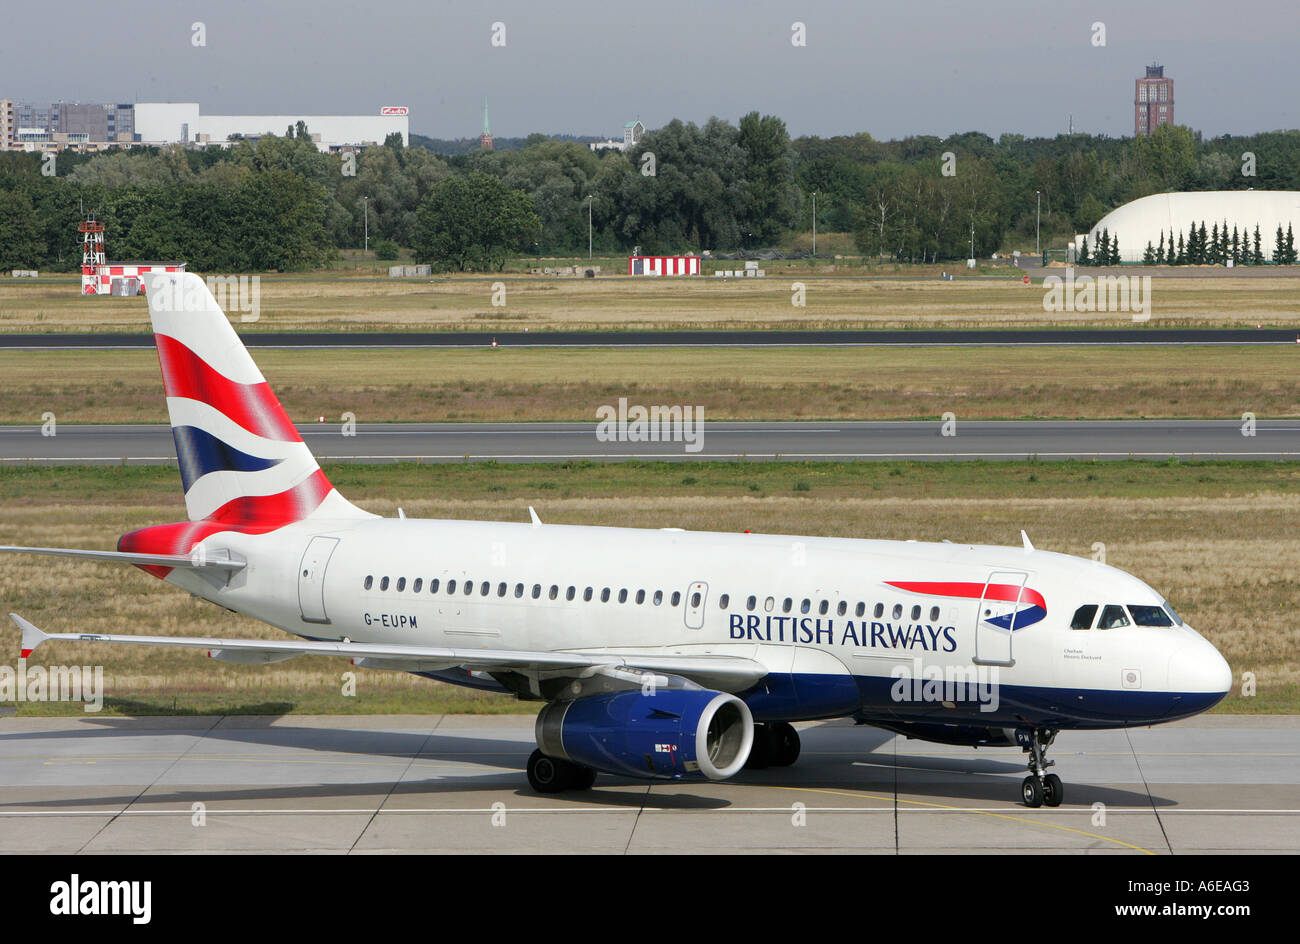 British Airways airplane at Tegel airport, Berlin Stock Photo